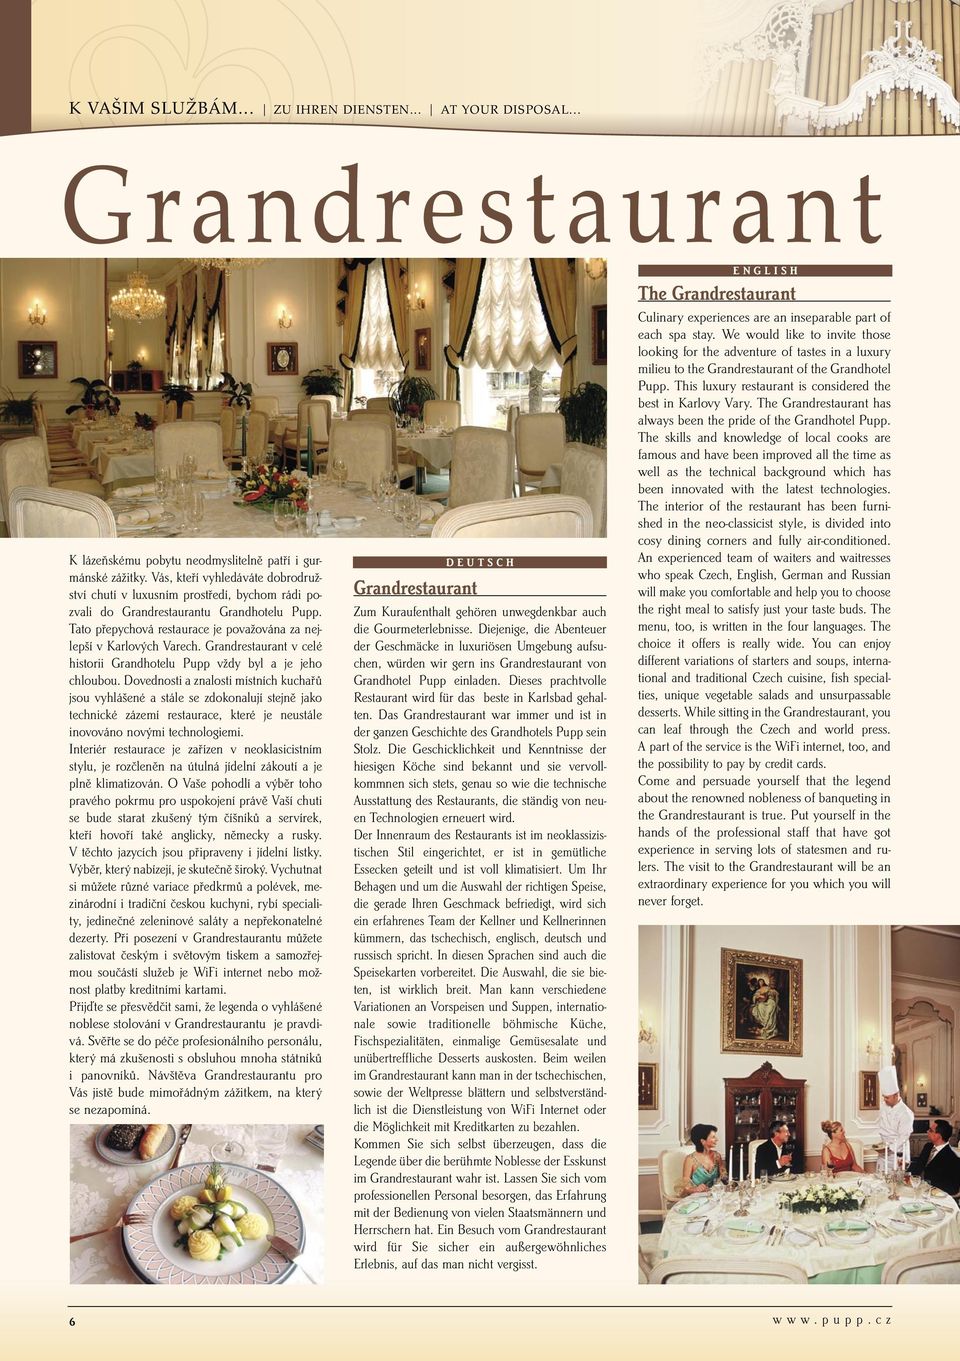 Grandrestaurant v celé historii Grandhotelu Pupp vždy byl a je jeho chloubou.